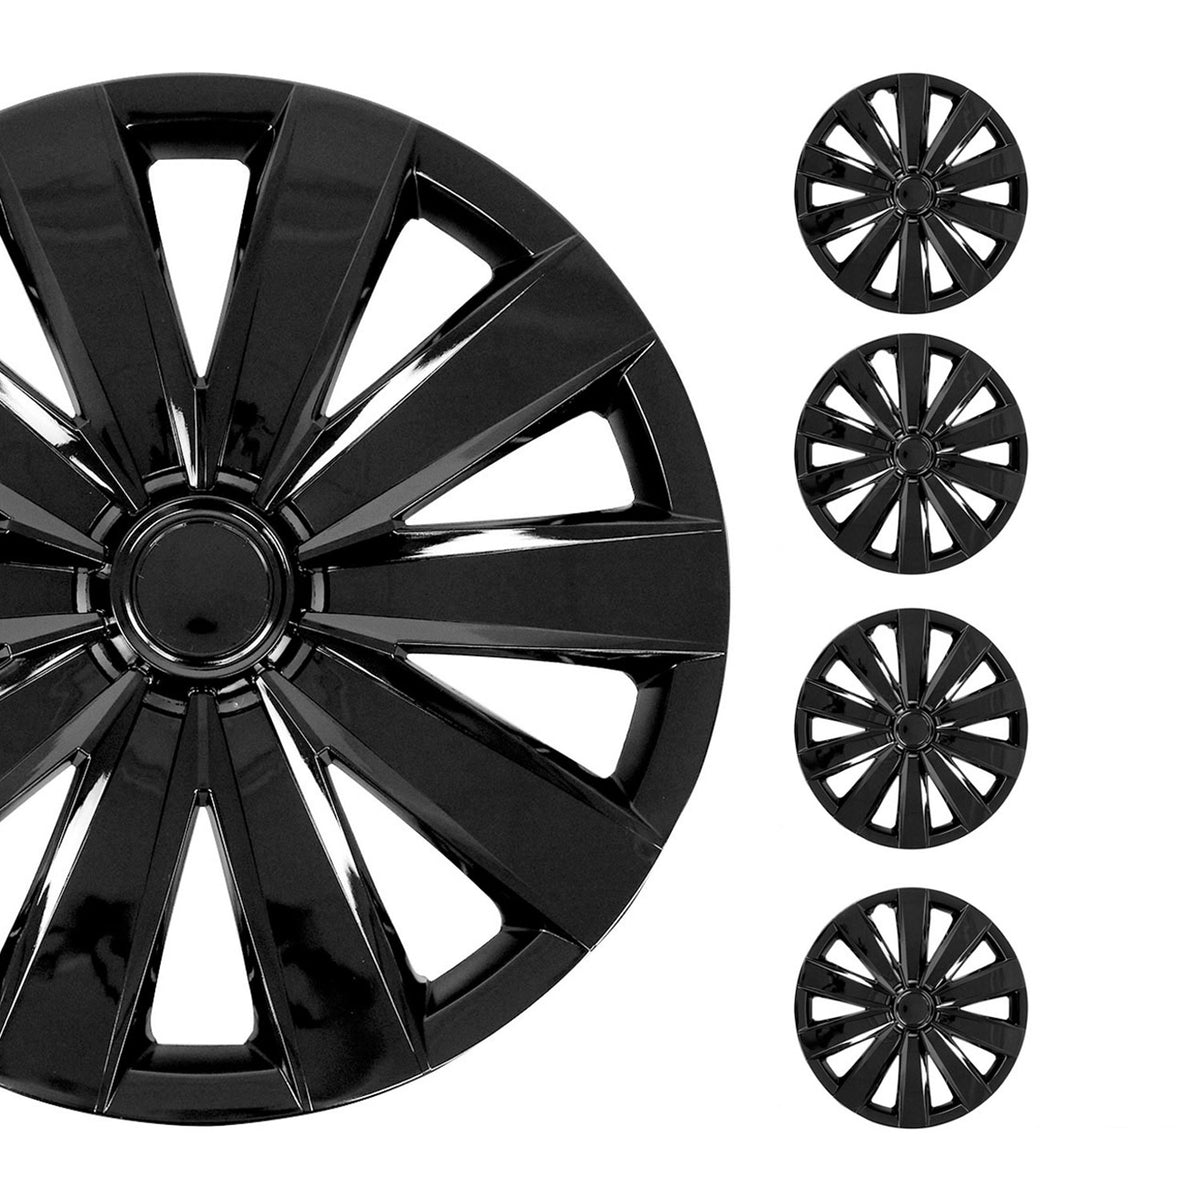 Hub caps wheel trims wheel trims for cars 16" inch ABS black 4x